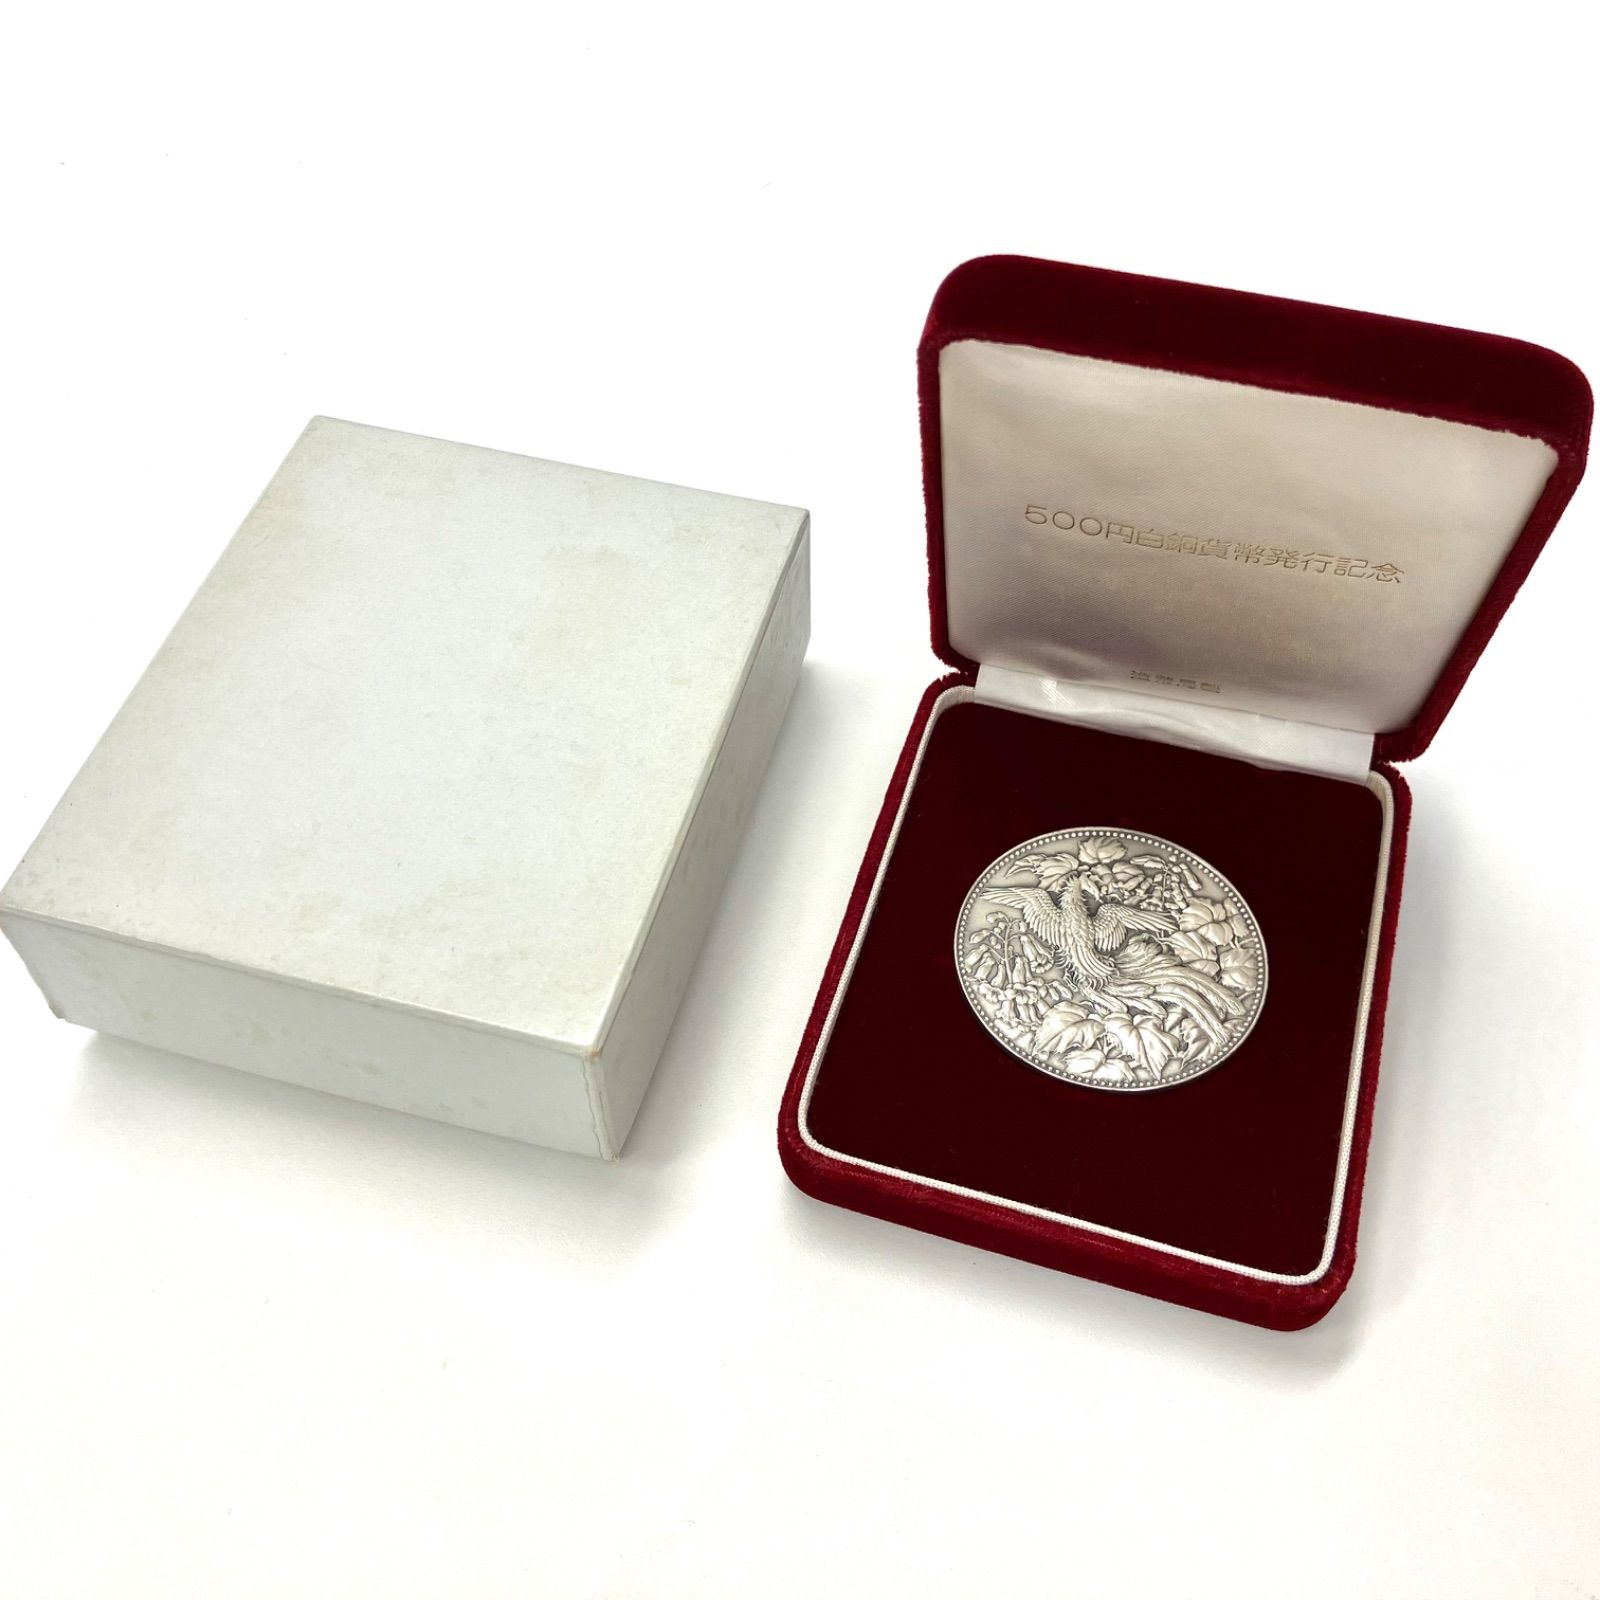 500円白銅貨幣発行記念メダル ( E ) - コレクション